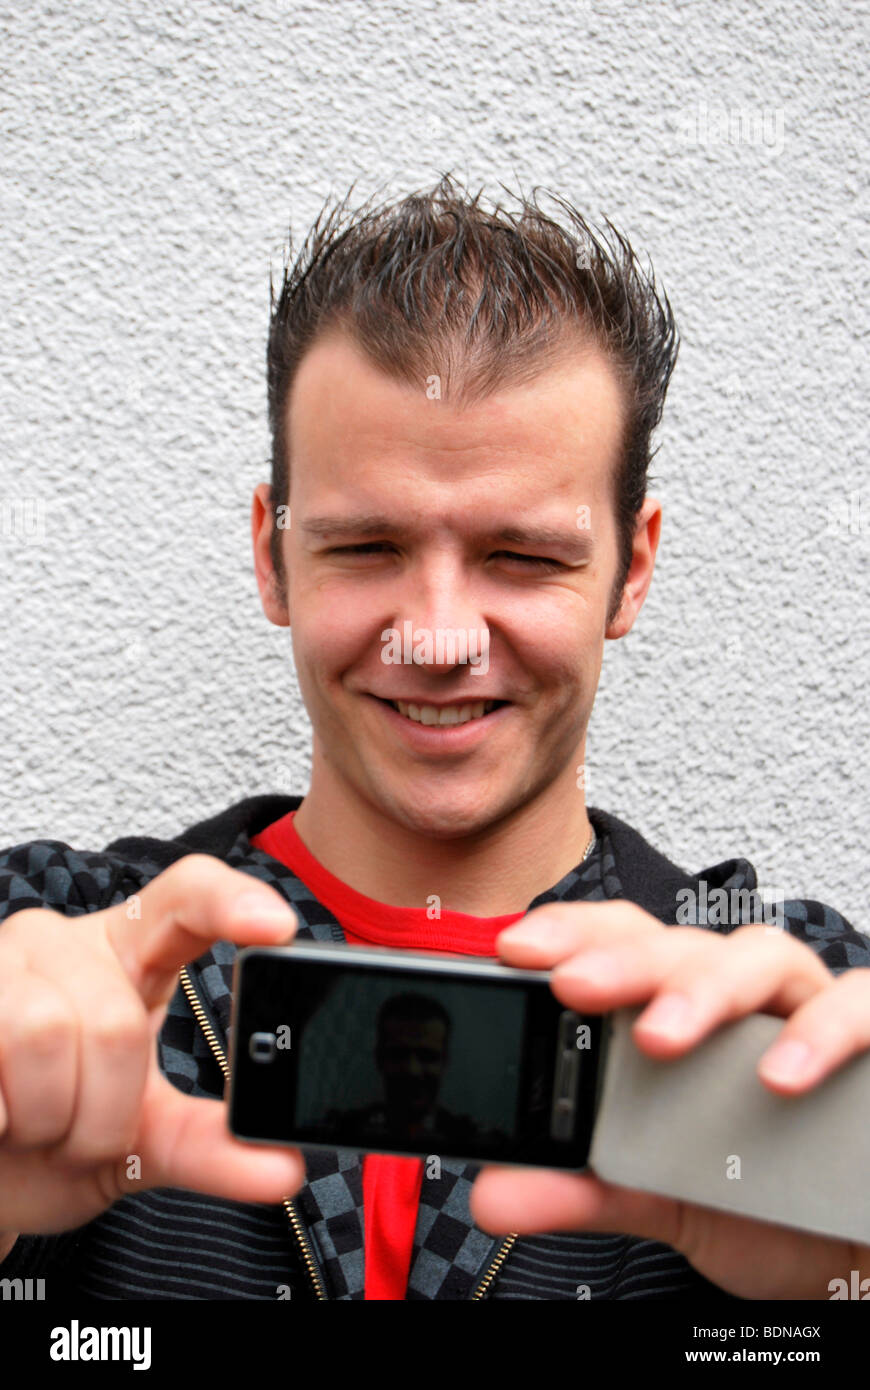 Self-portrait, giovane fotografa se stesso con la fotocamera del telefono cellulare Foto Stock